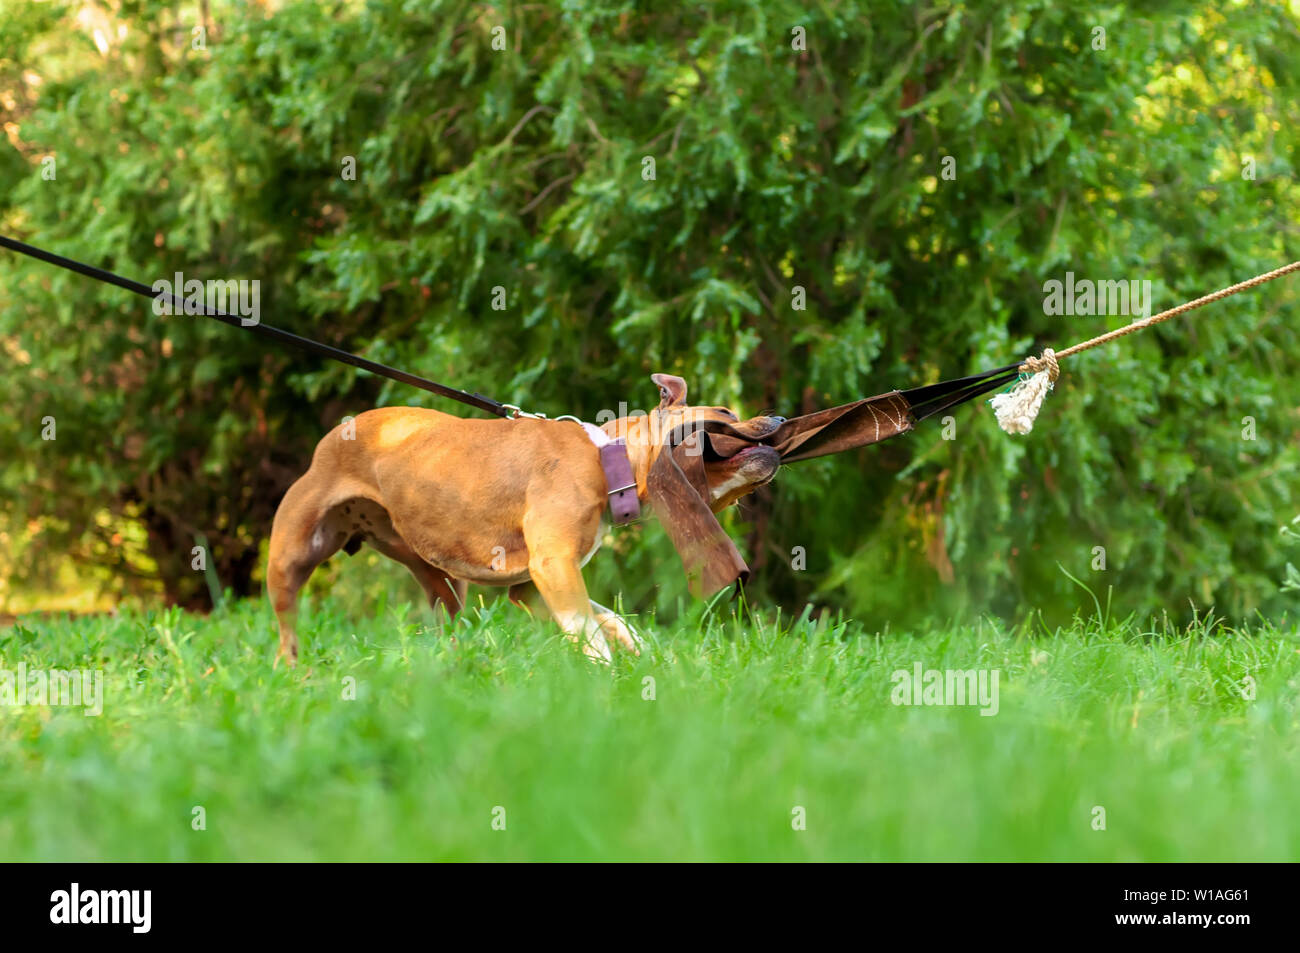 Blick auf die Ausbildung eines American Staffordshire Terrier Hund während Sie ein Seil an einem sonnigen Tag in einer grünen Umgebung. Stockfoto